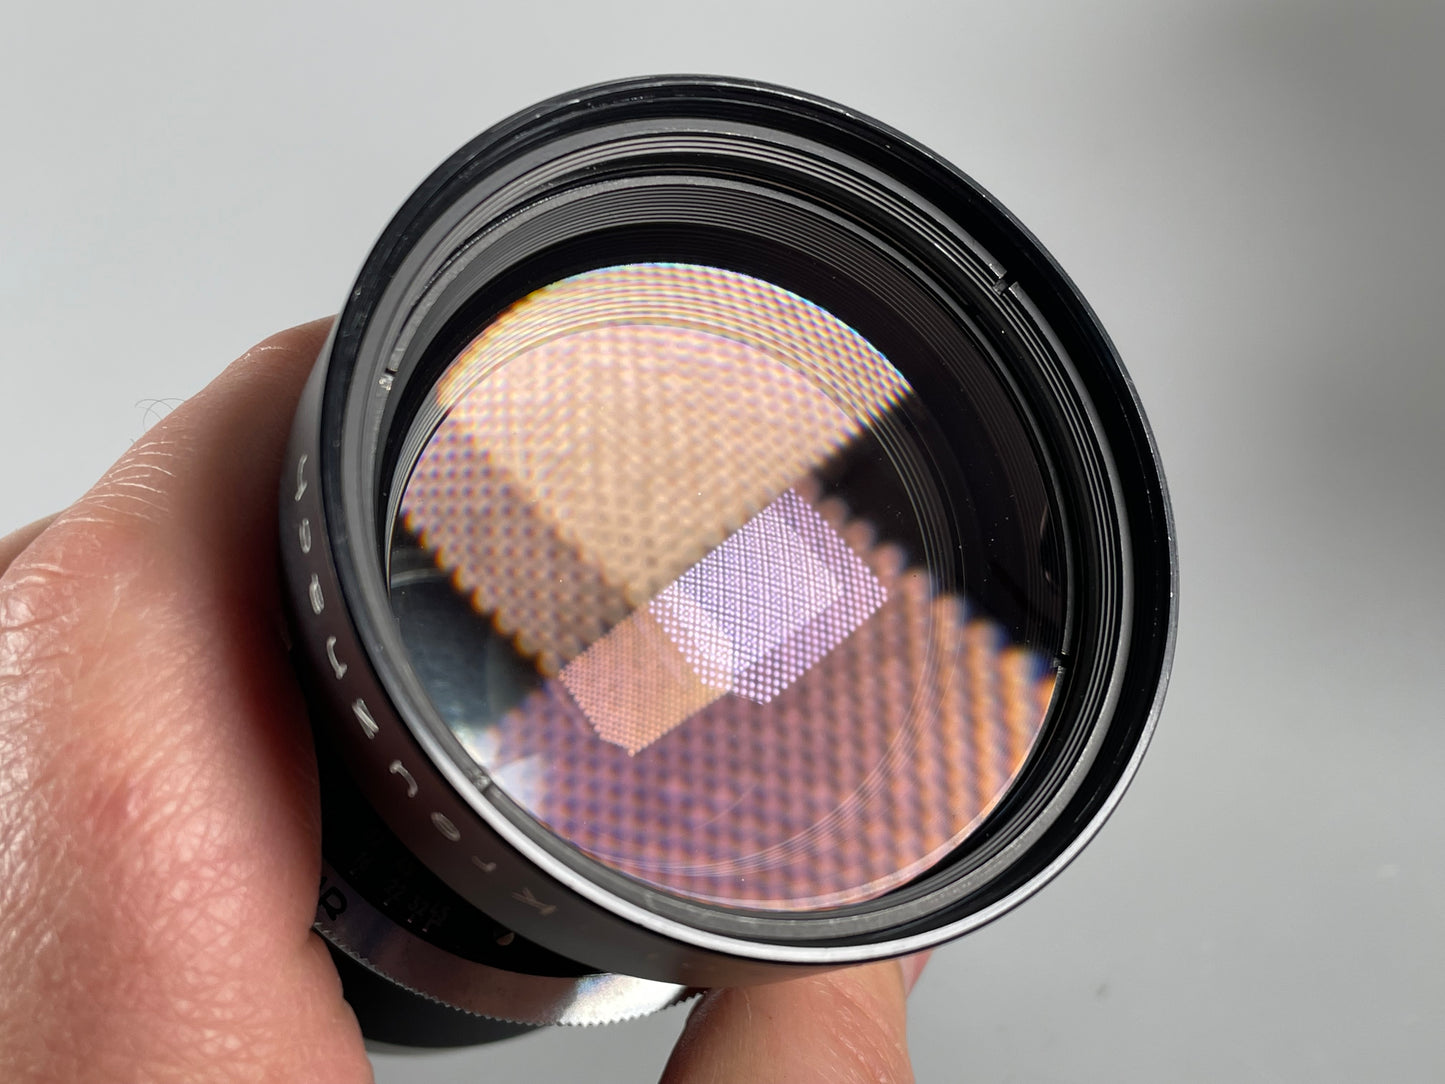 Linhof Select Schneider Tele Arton 250mm f5.6 Lens with matching Cam